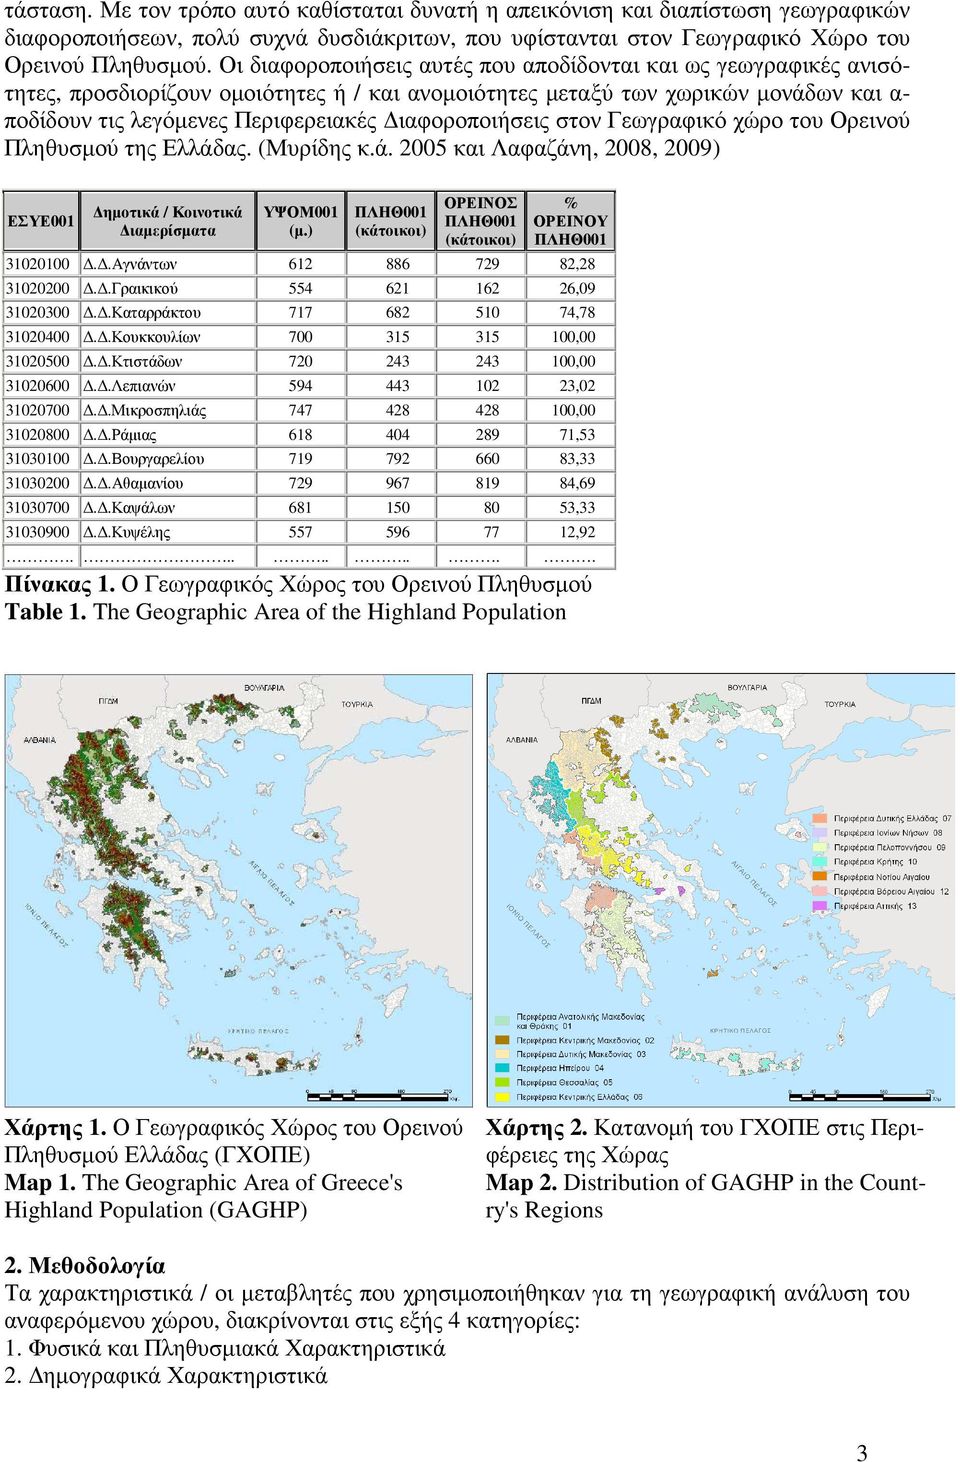 ιαφοροποιήσεις στον Γεωγραφικό χώρο του Ορεινού Πληθυσµού της Ελλάδας. (Μυρίδης κ.ά. 2005 και Λαφαζάνη, 2008, 2009) ΕΣΥΕ001 ηµοτικά / Κοινοτικά ιαµερίσµατα ΥΨΟΜ001 (µ.